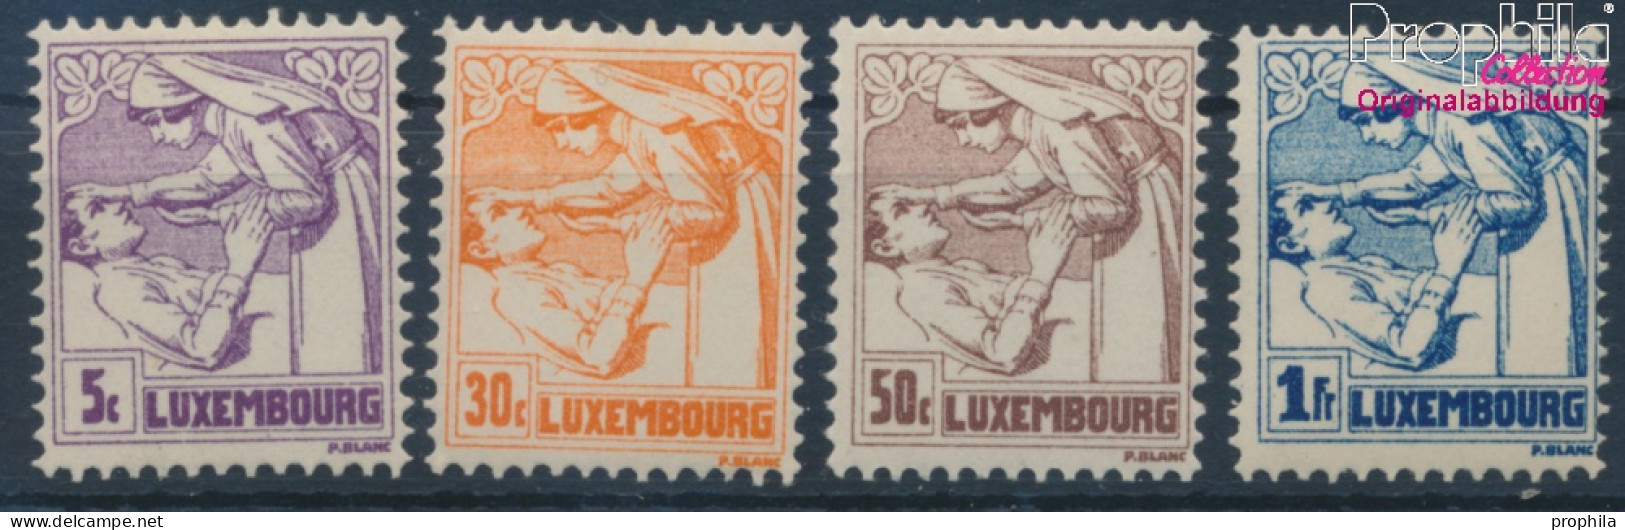 Luxemburg 157-160 (kompl.Ausg.) Postfrisch 1925 Tuberkulose (10363339 - Ungebraucht